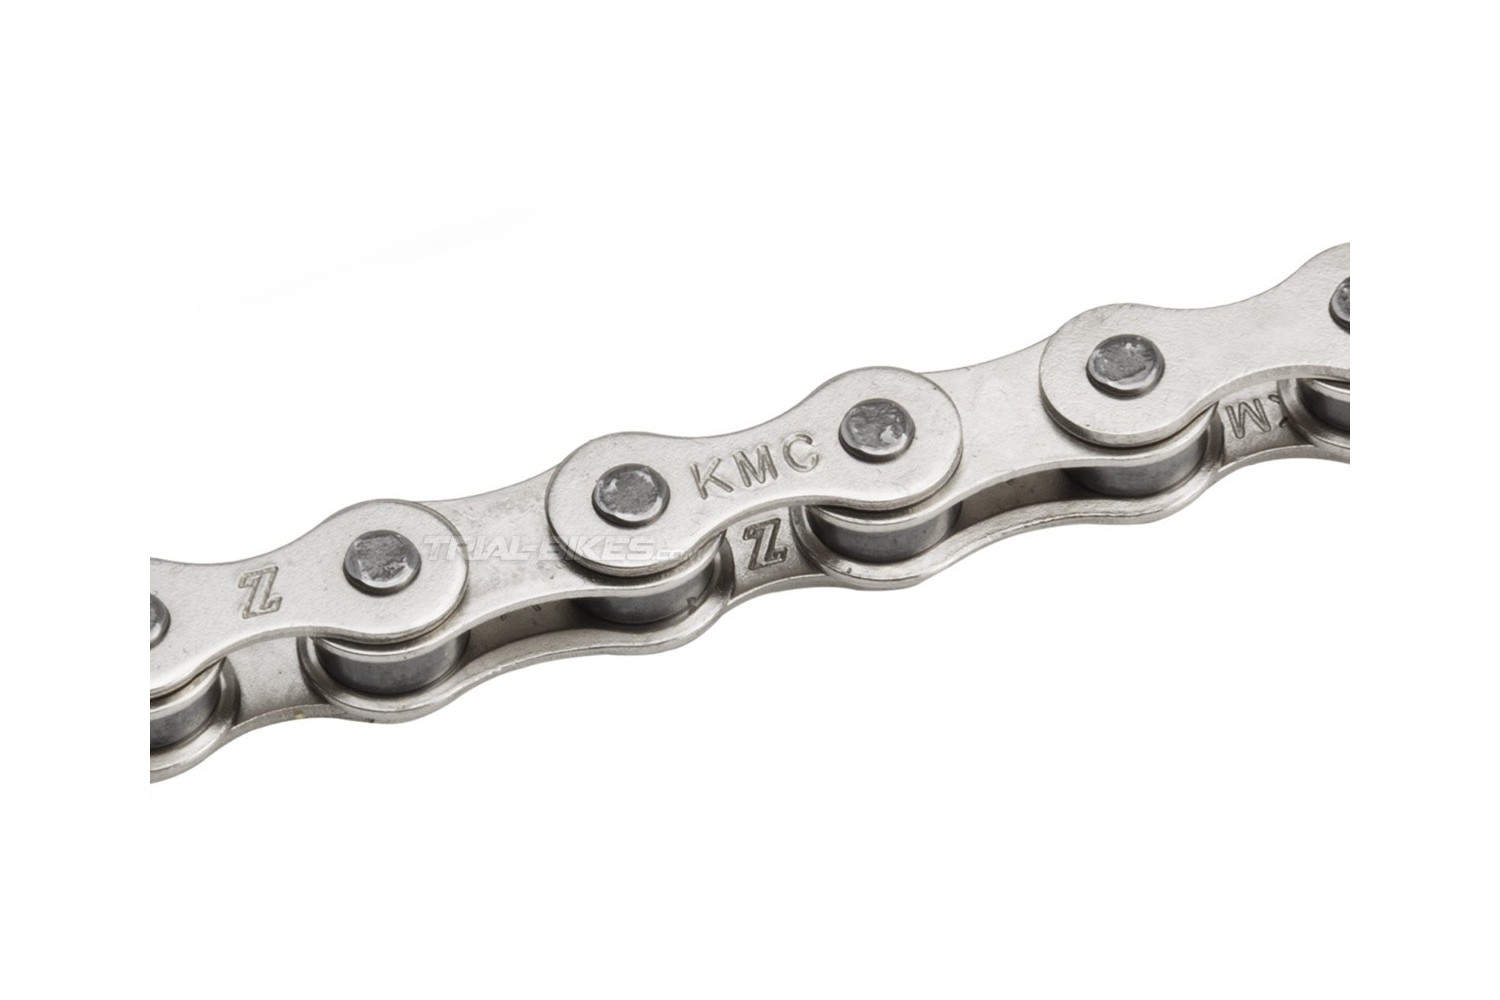 Edición Promover Seleccione Cadena KMC Z1 Wide cadena de trial, BMX